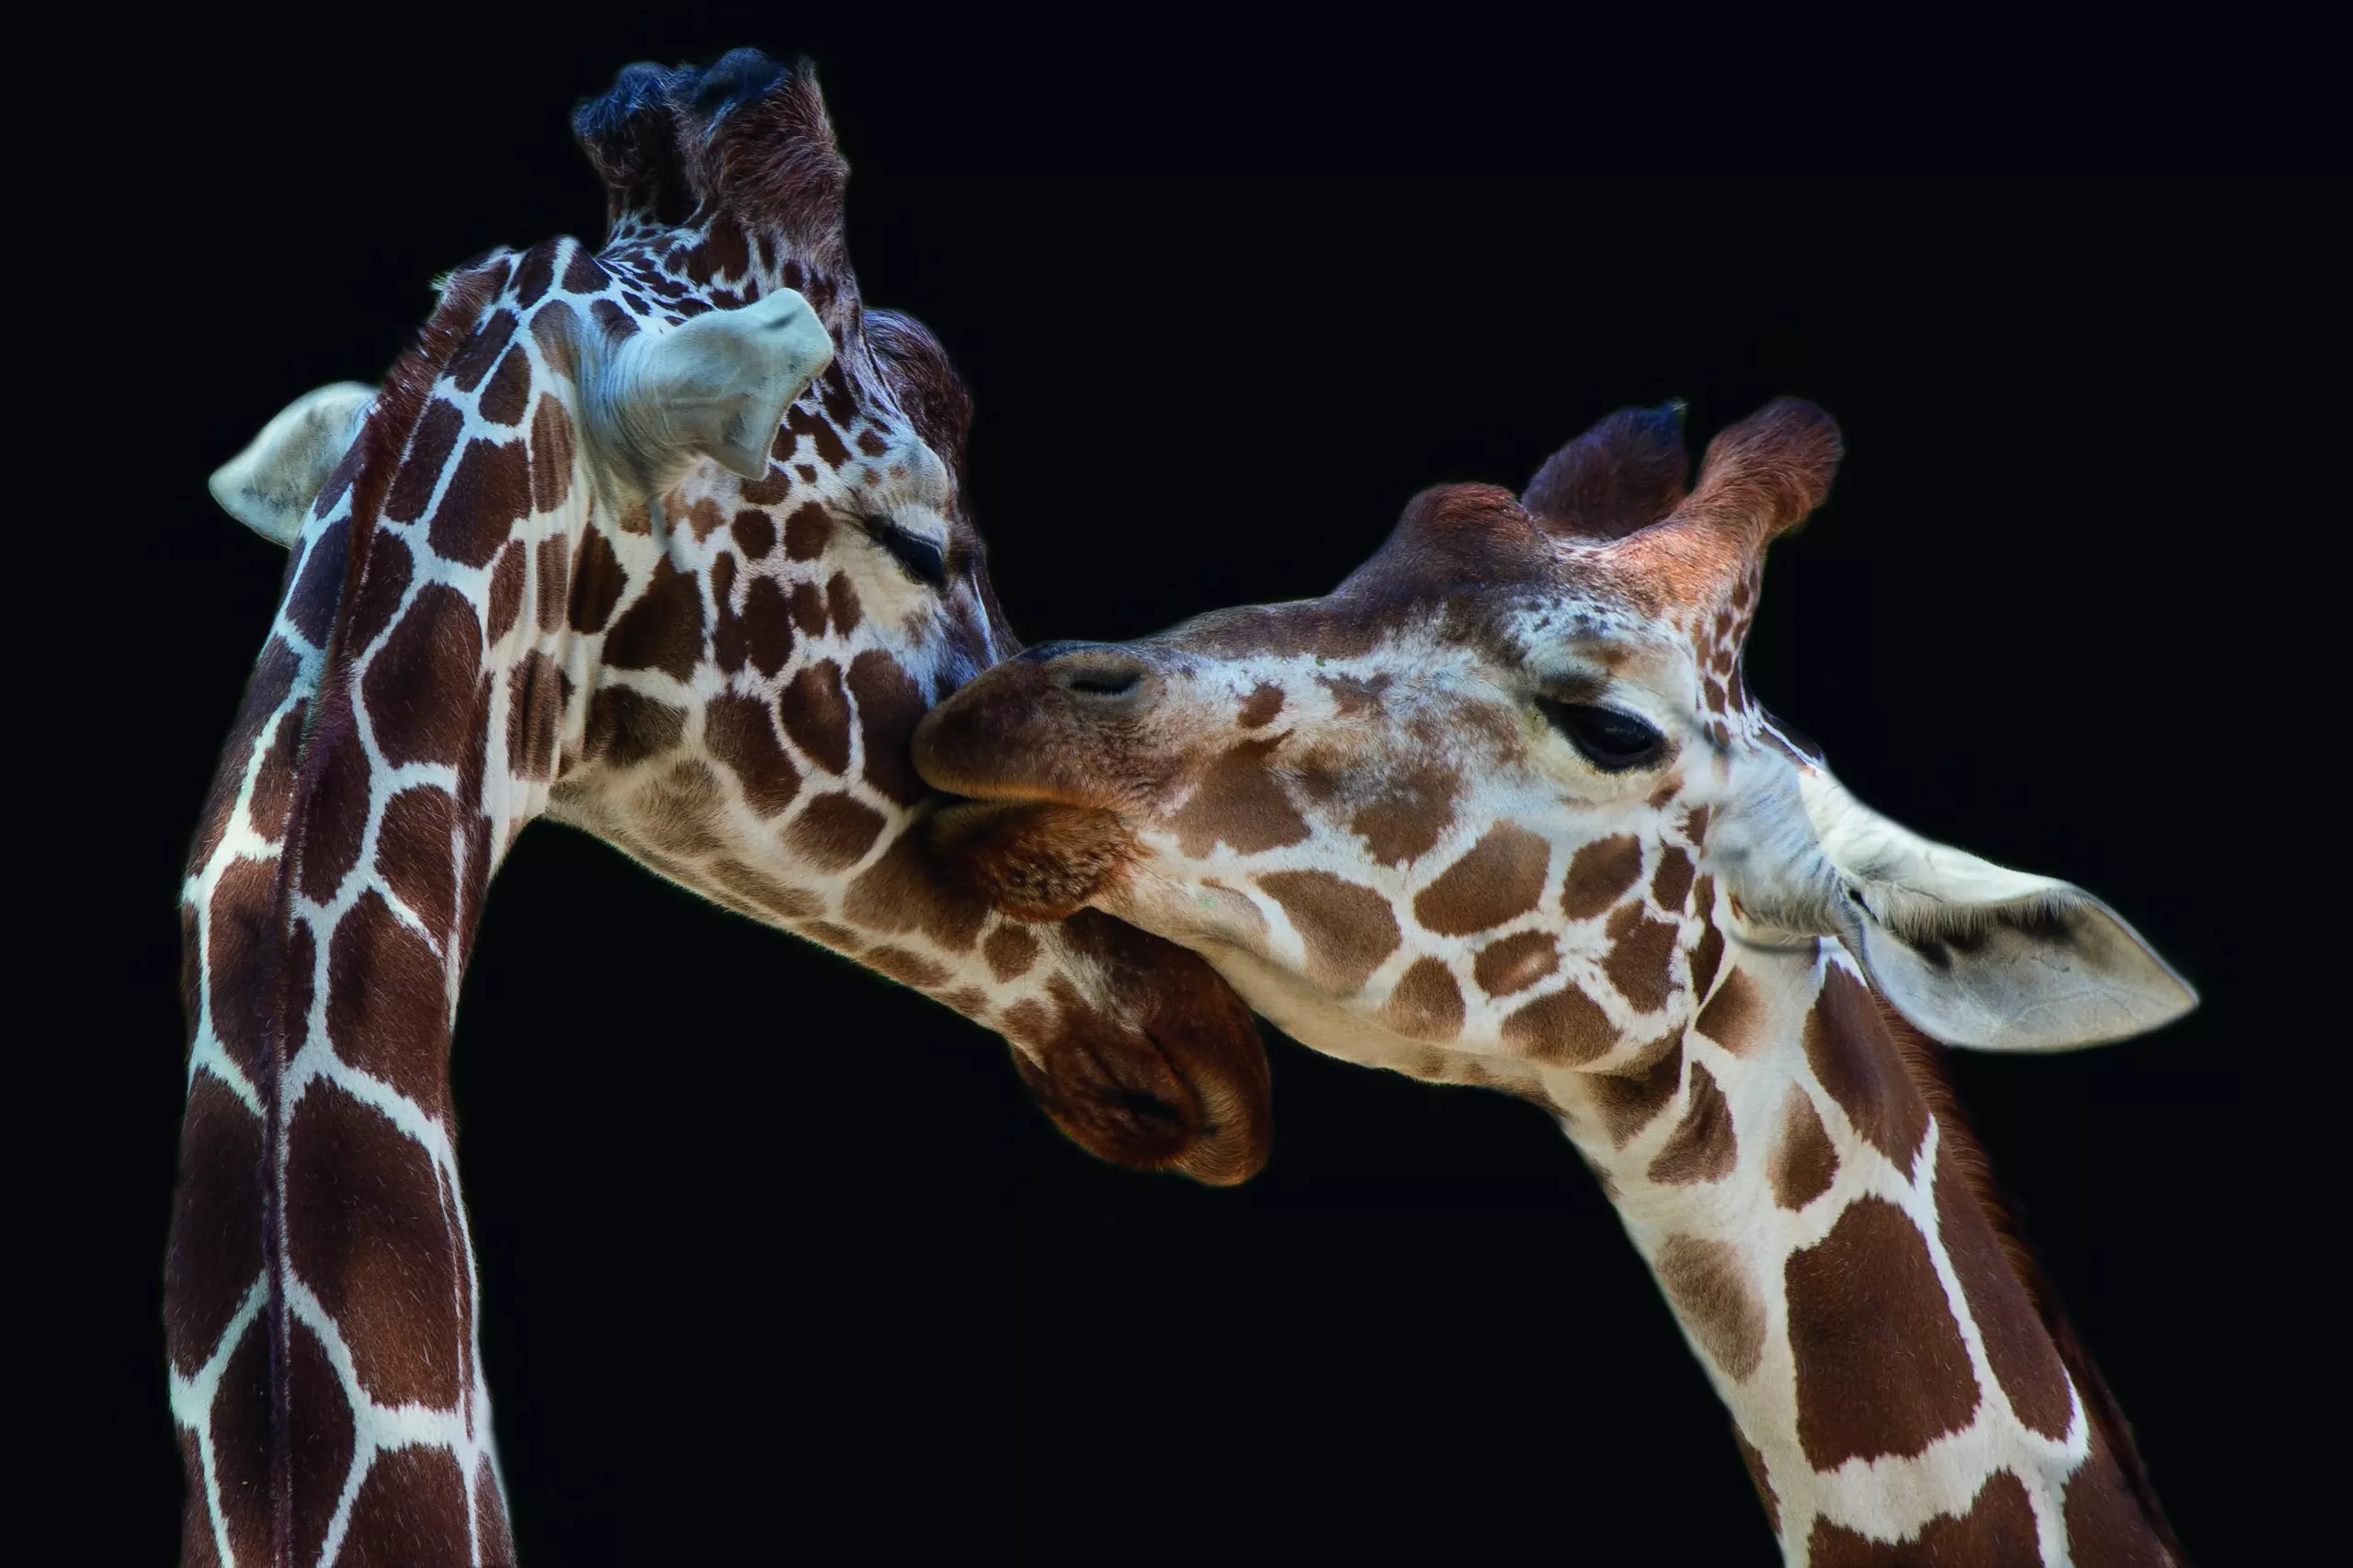 Wandbild (5144) The kiss by Manfred Foeger präsentiert: Tiere,Natur,Wildtiere,Aus Afrika